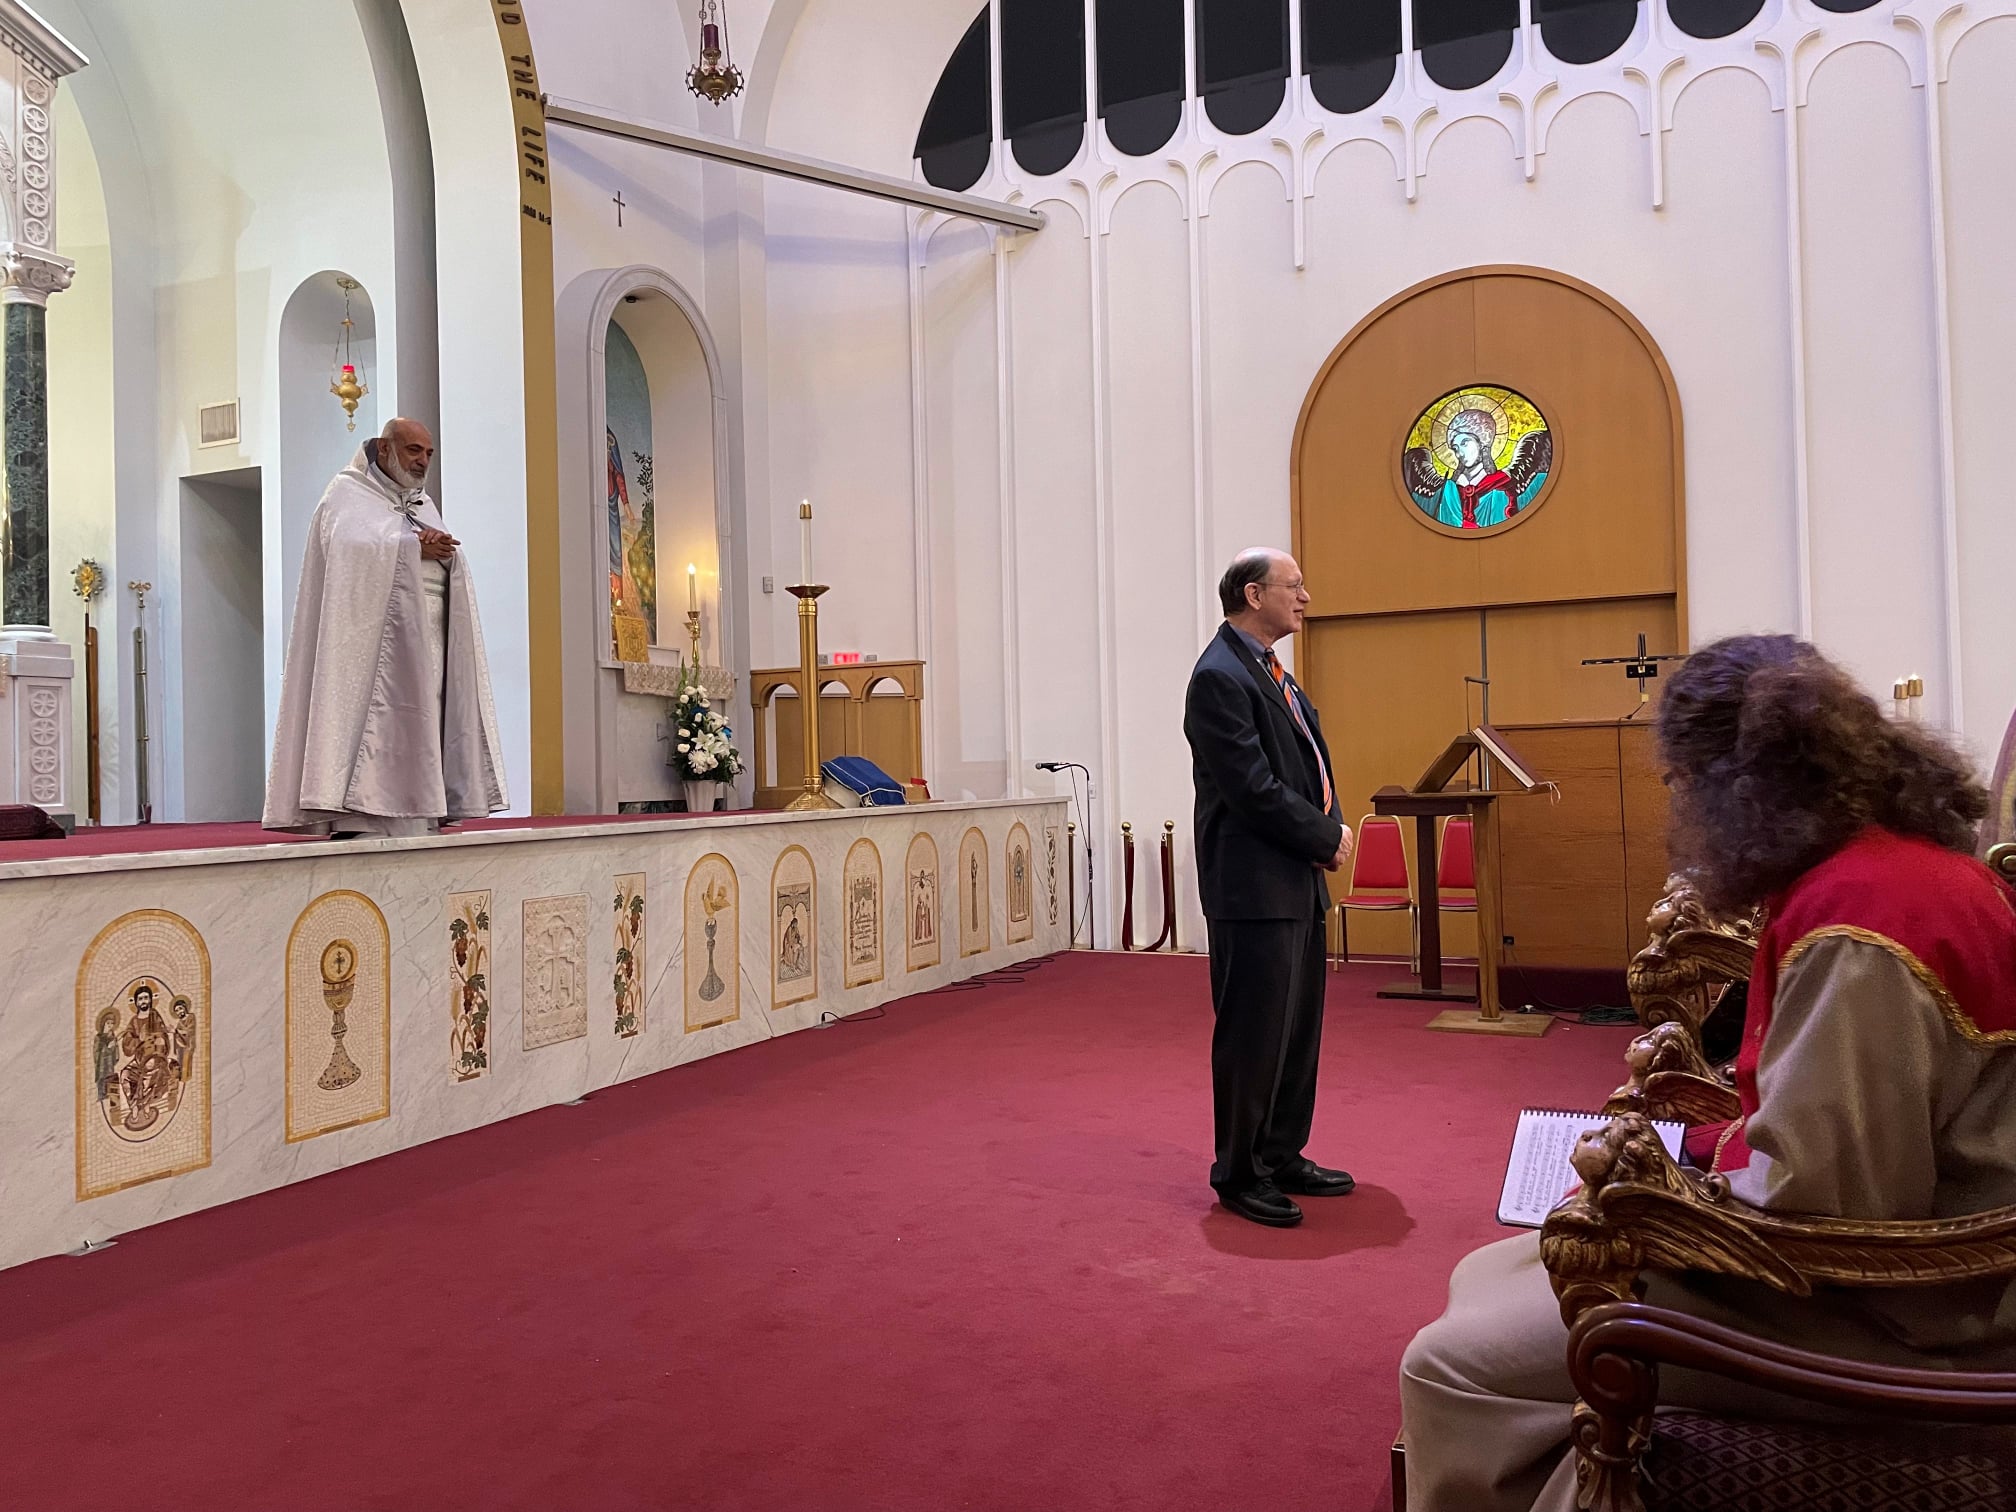 ԱՄՆ կոնգրեսական Բրեդ Շերմանն ԱՄՆ-ում այցելել է հայկական եկեղեցի, մասնակցել պատարագի (լուսանկարներ)